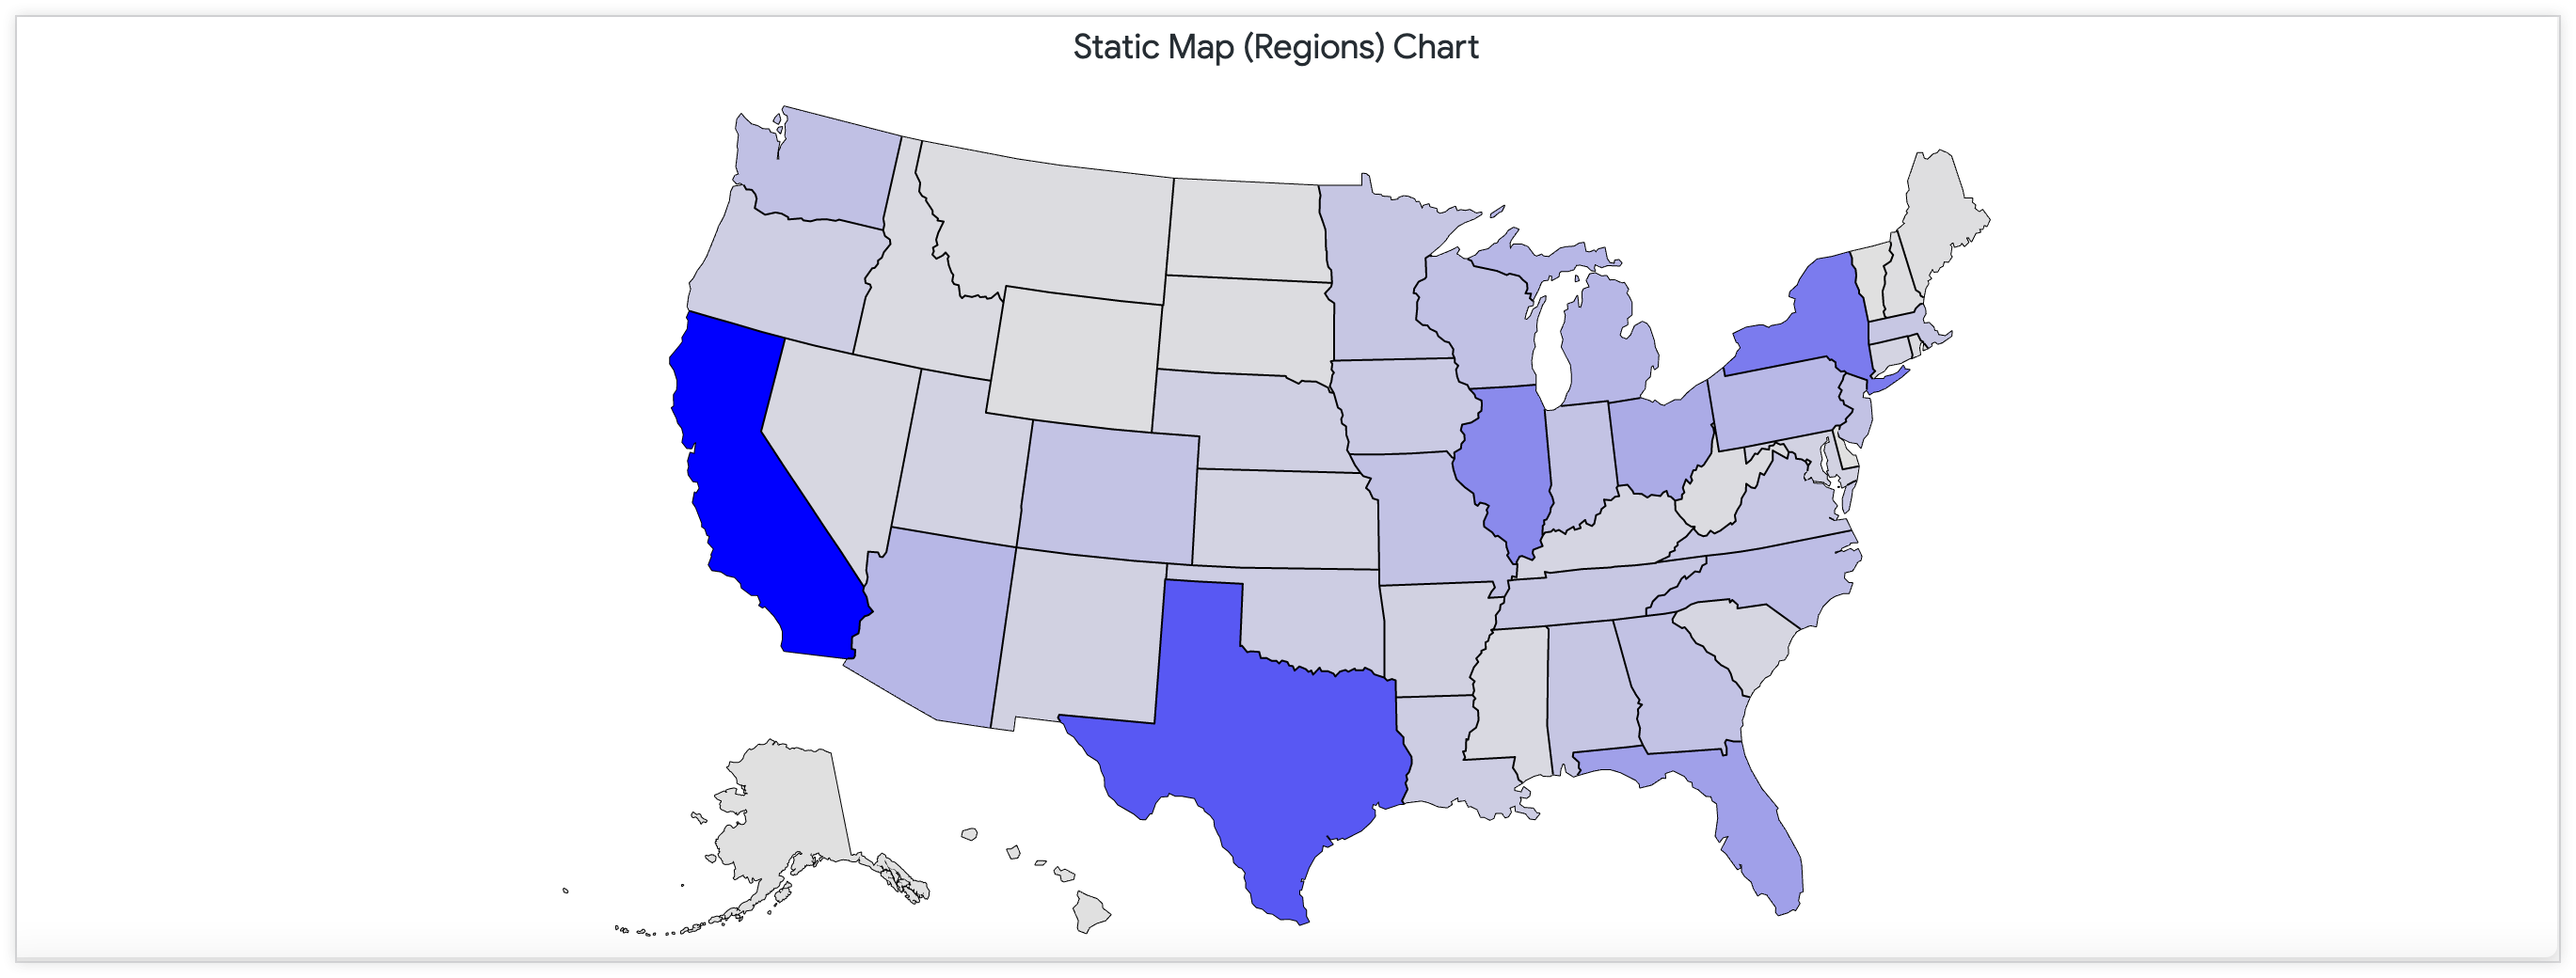 显示连续美国调色板的美国商店位置数量的静态地图。